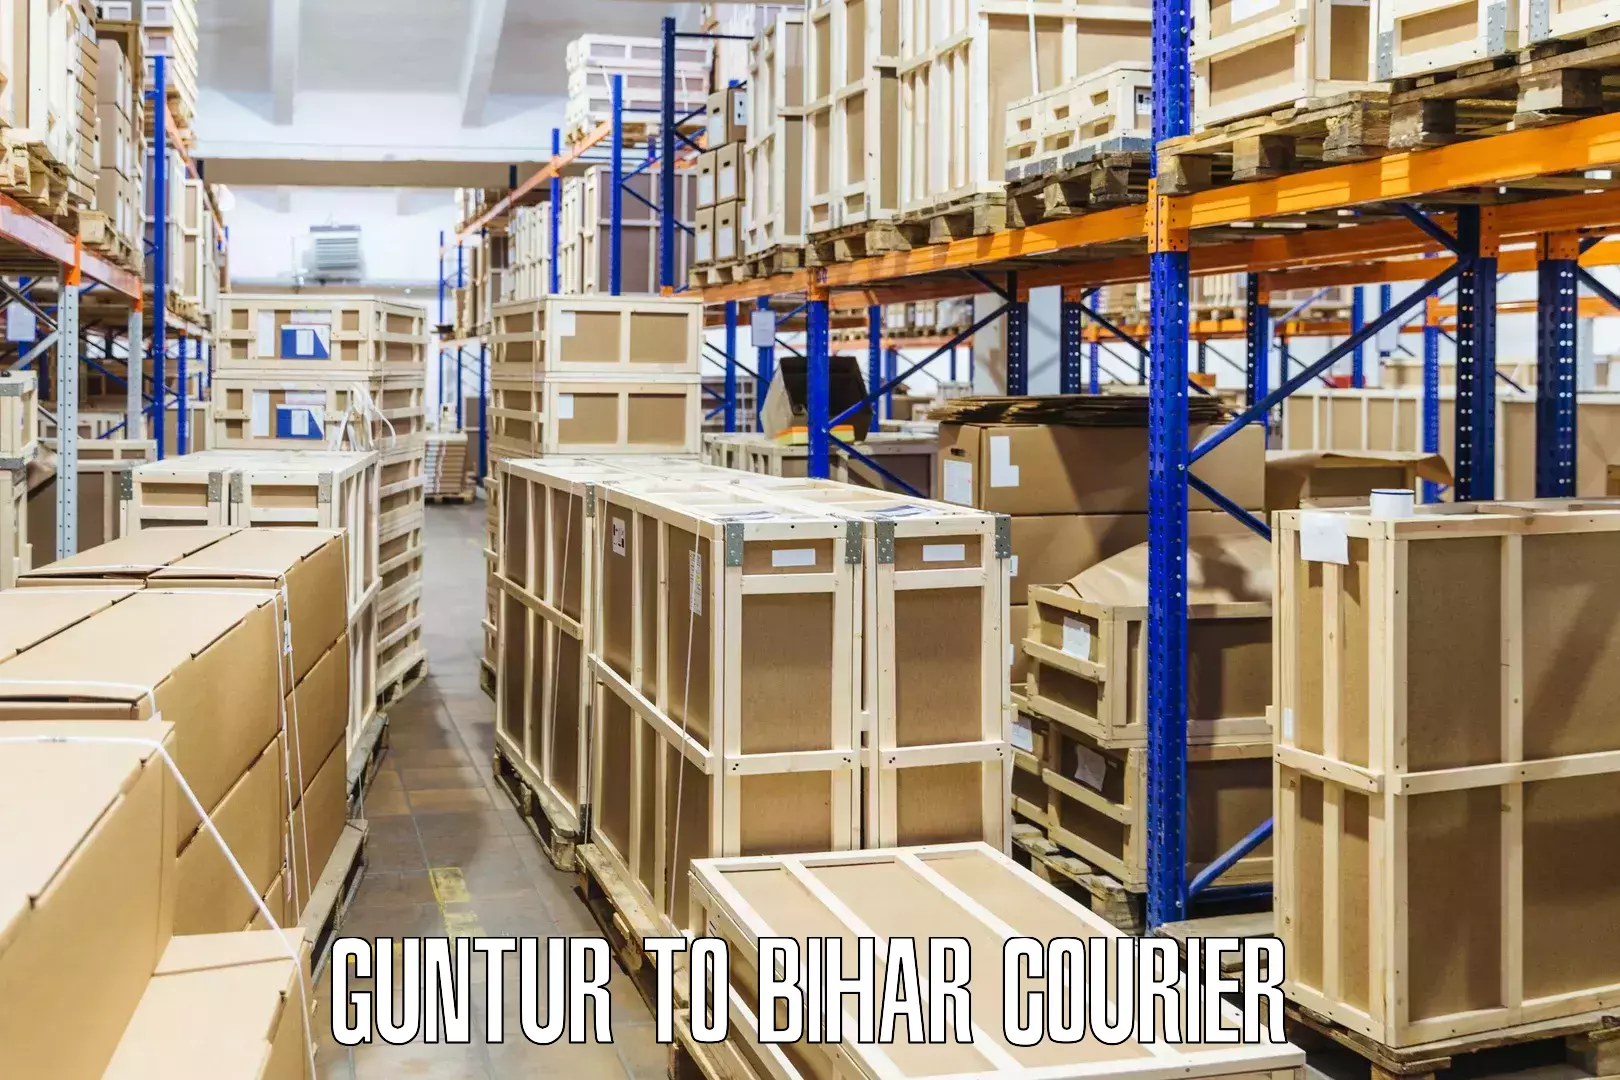 Cargo delivery service Guntur to Rajpur